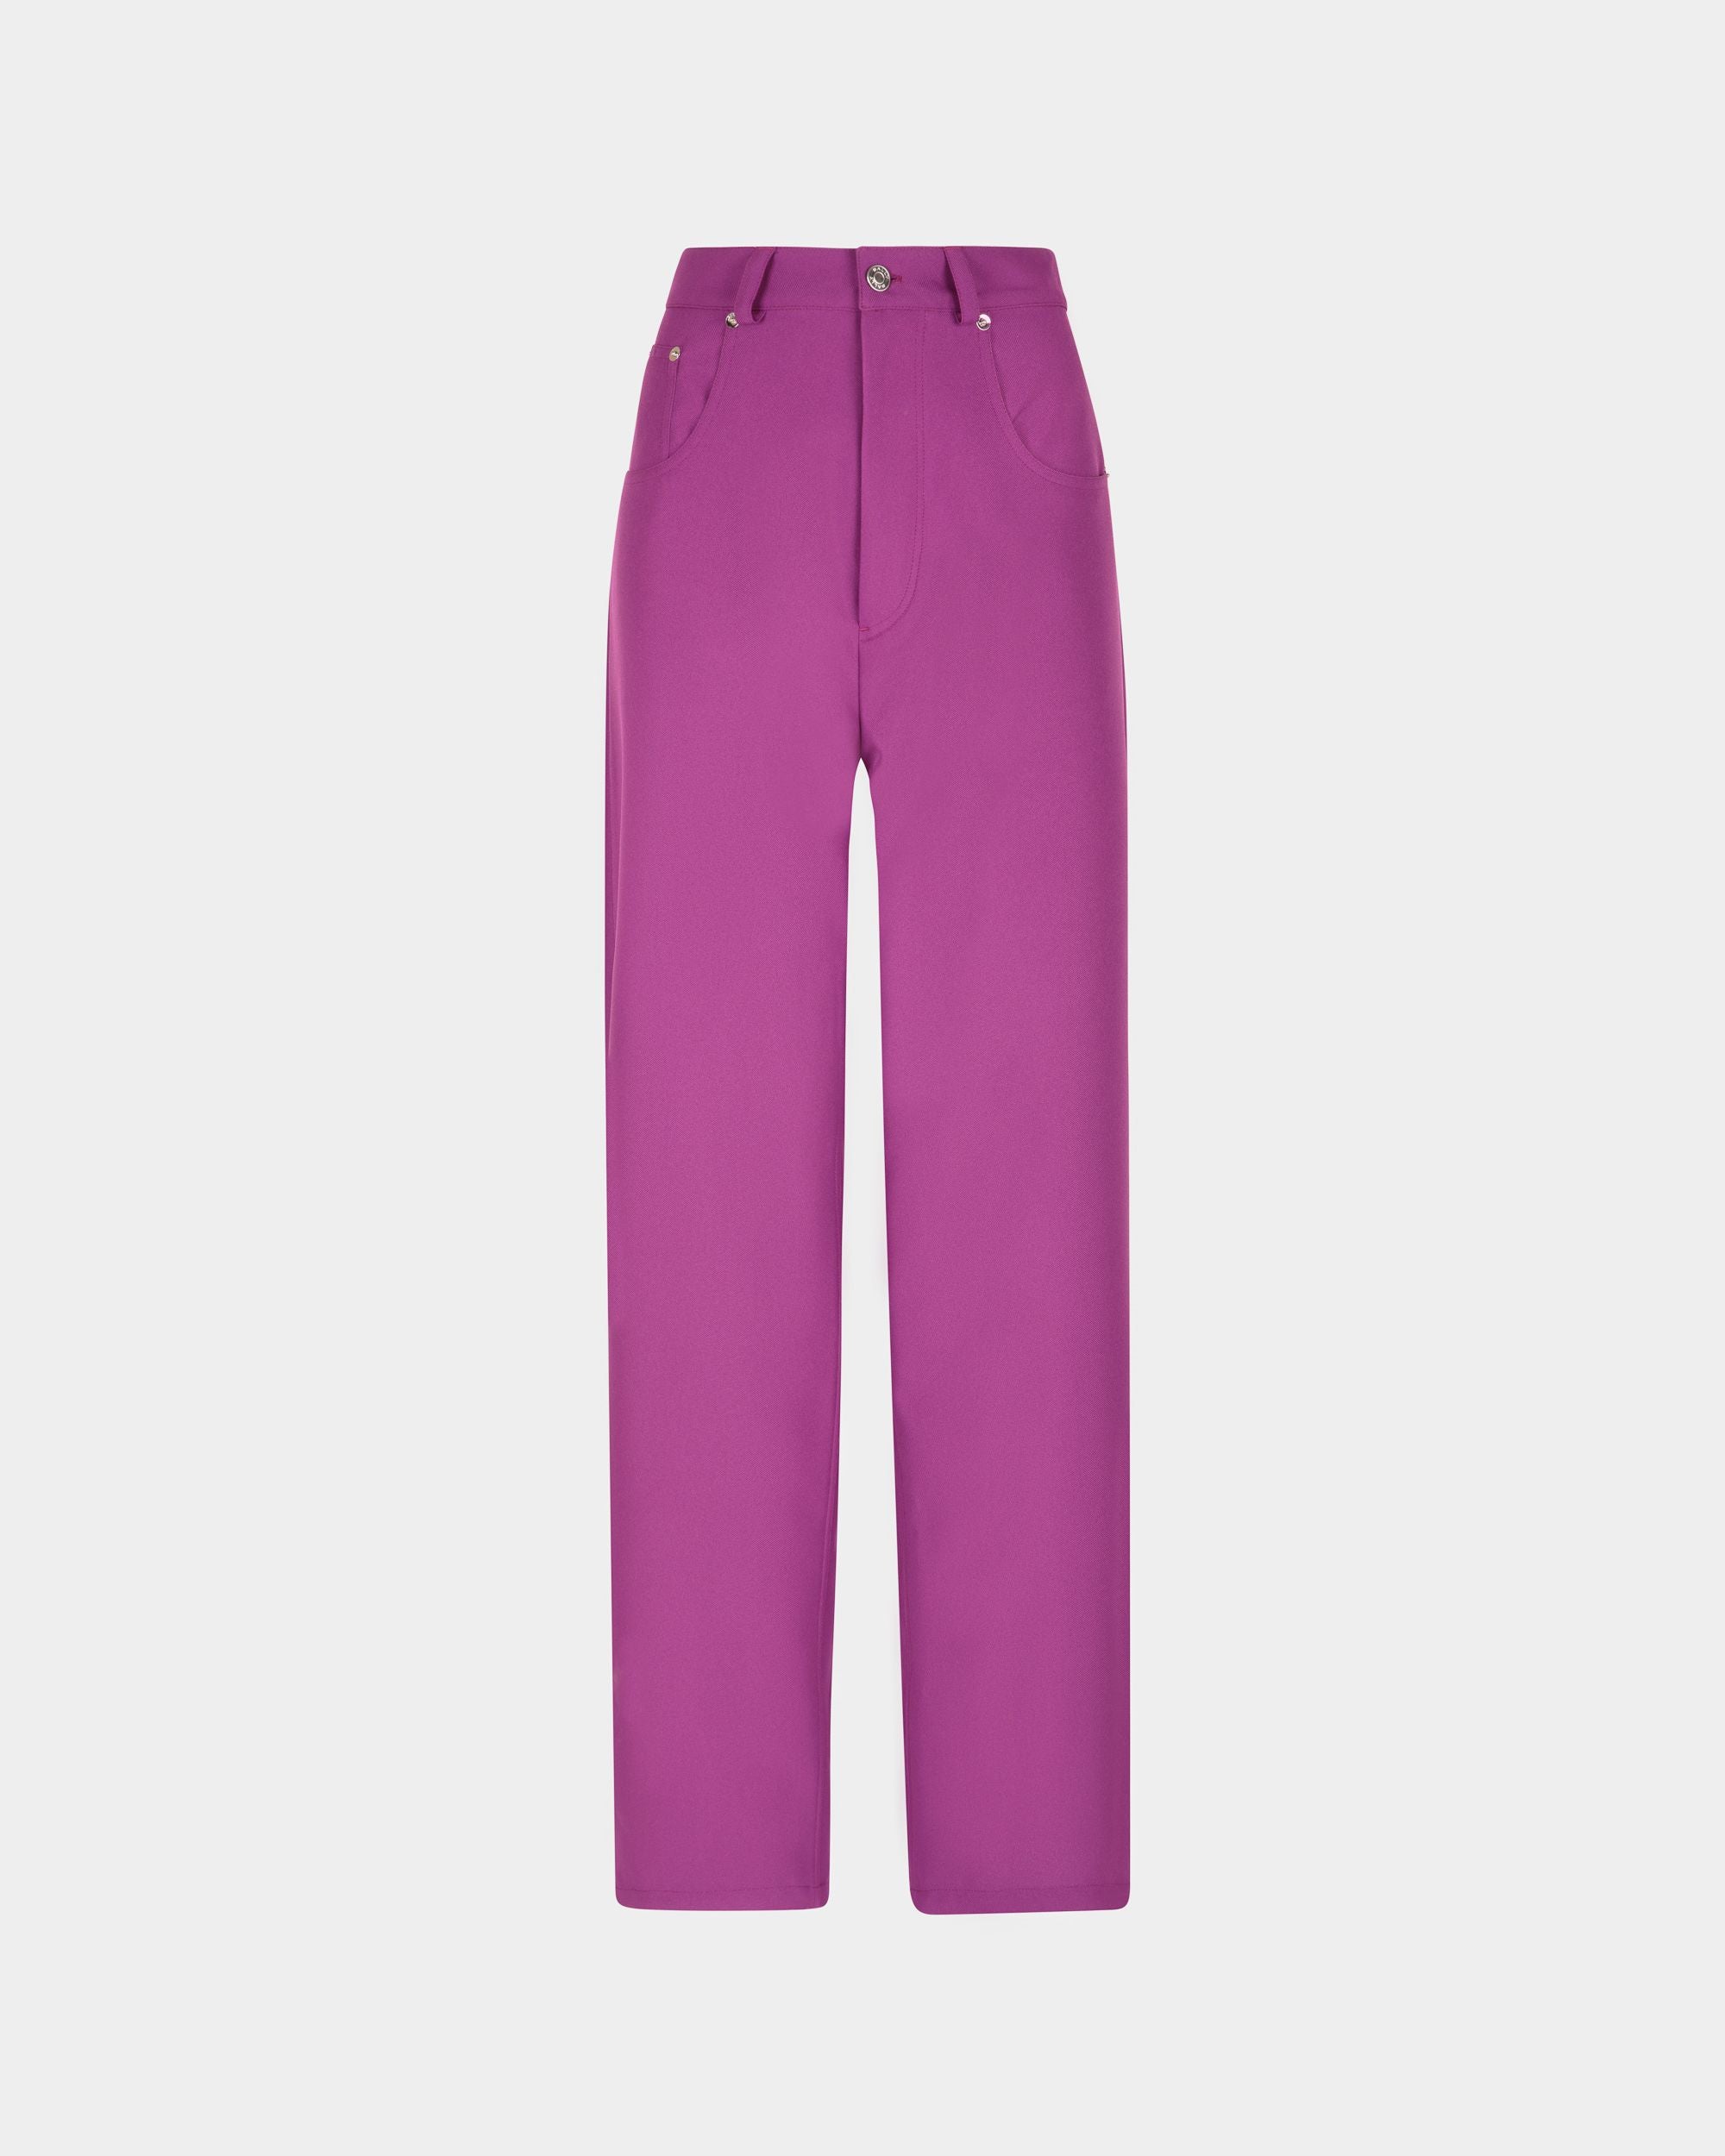 Pantalon taille haute pour femme couleur rose | Bally | Still Life Devant